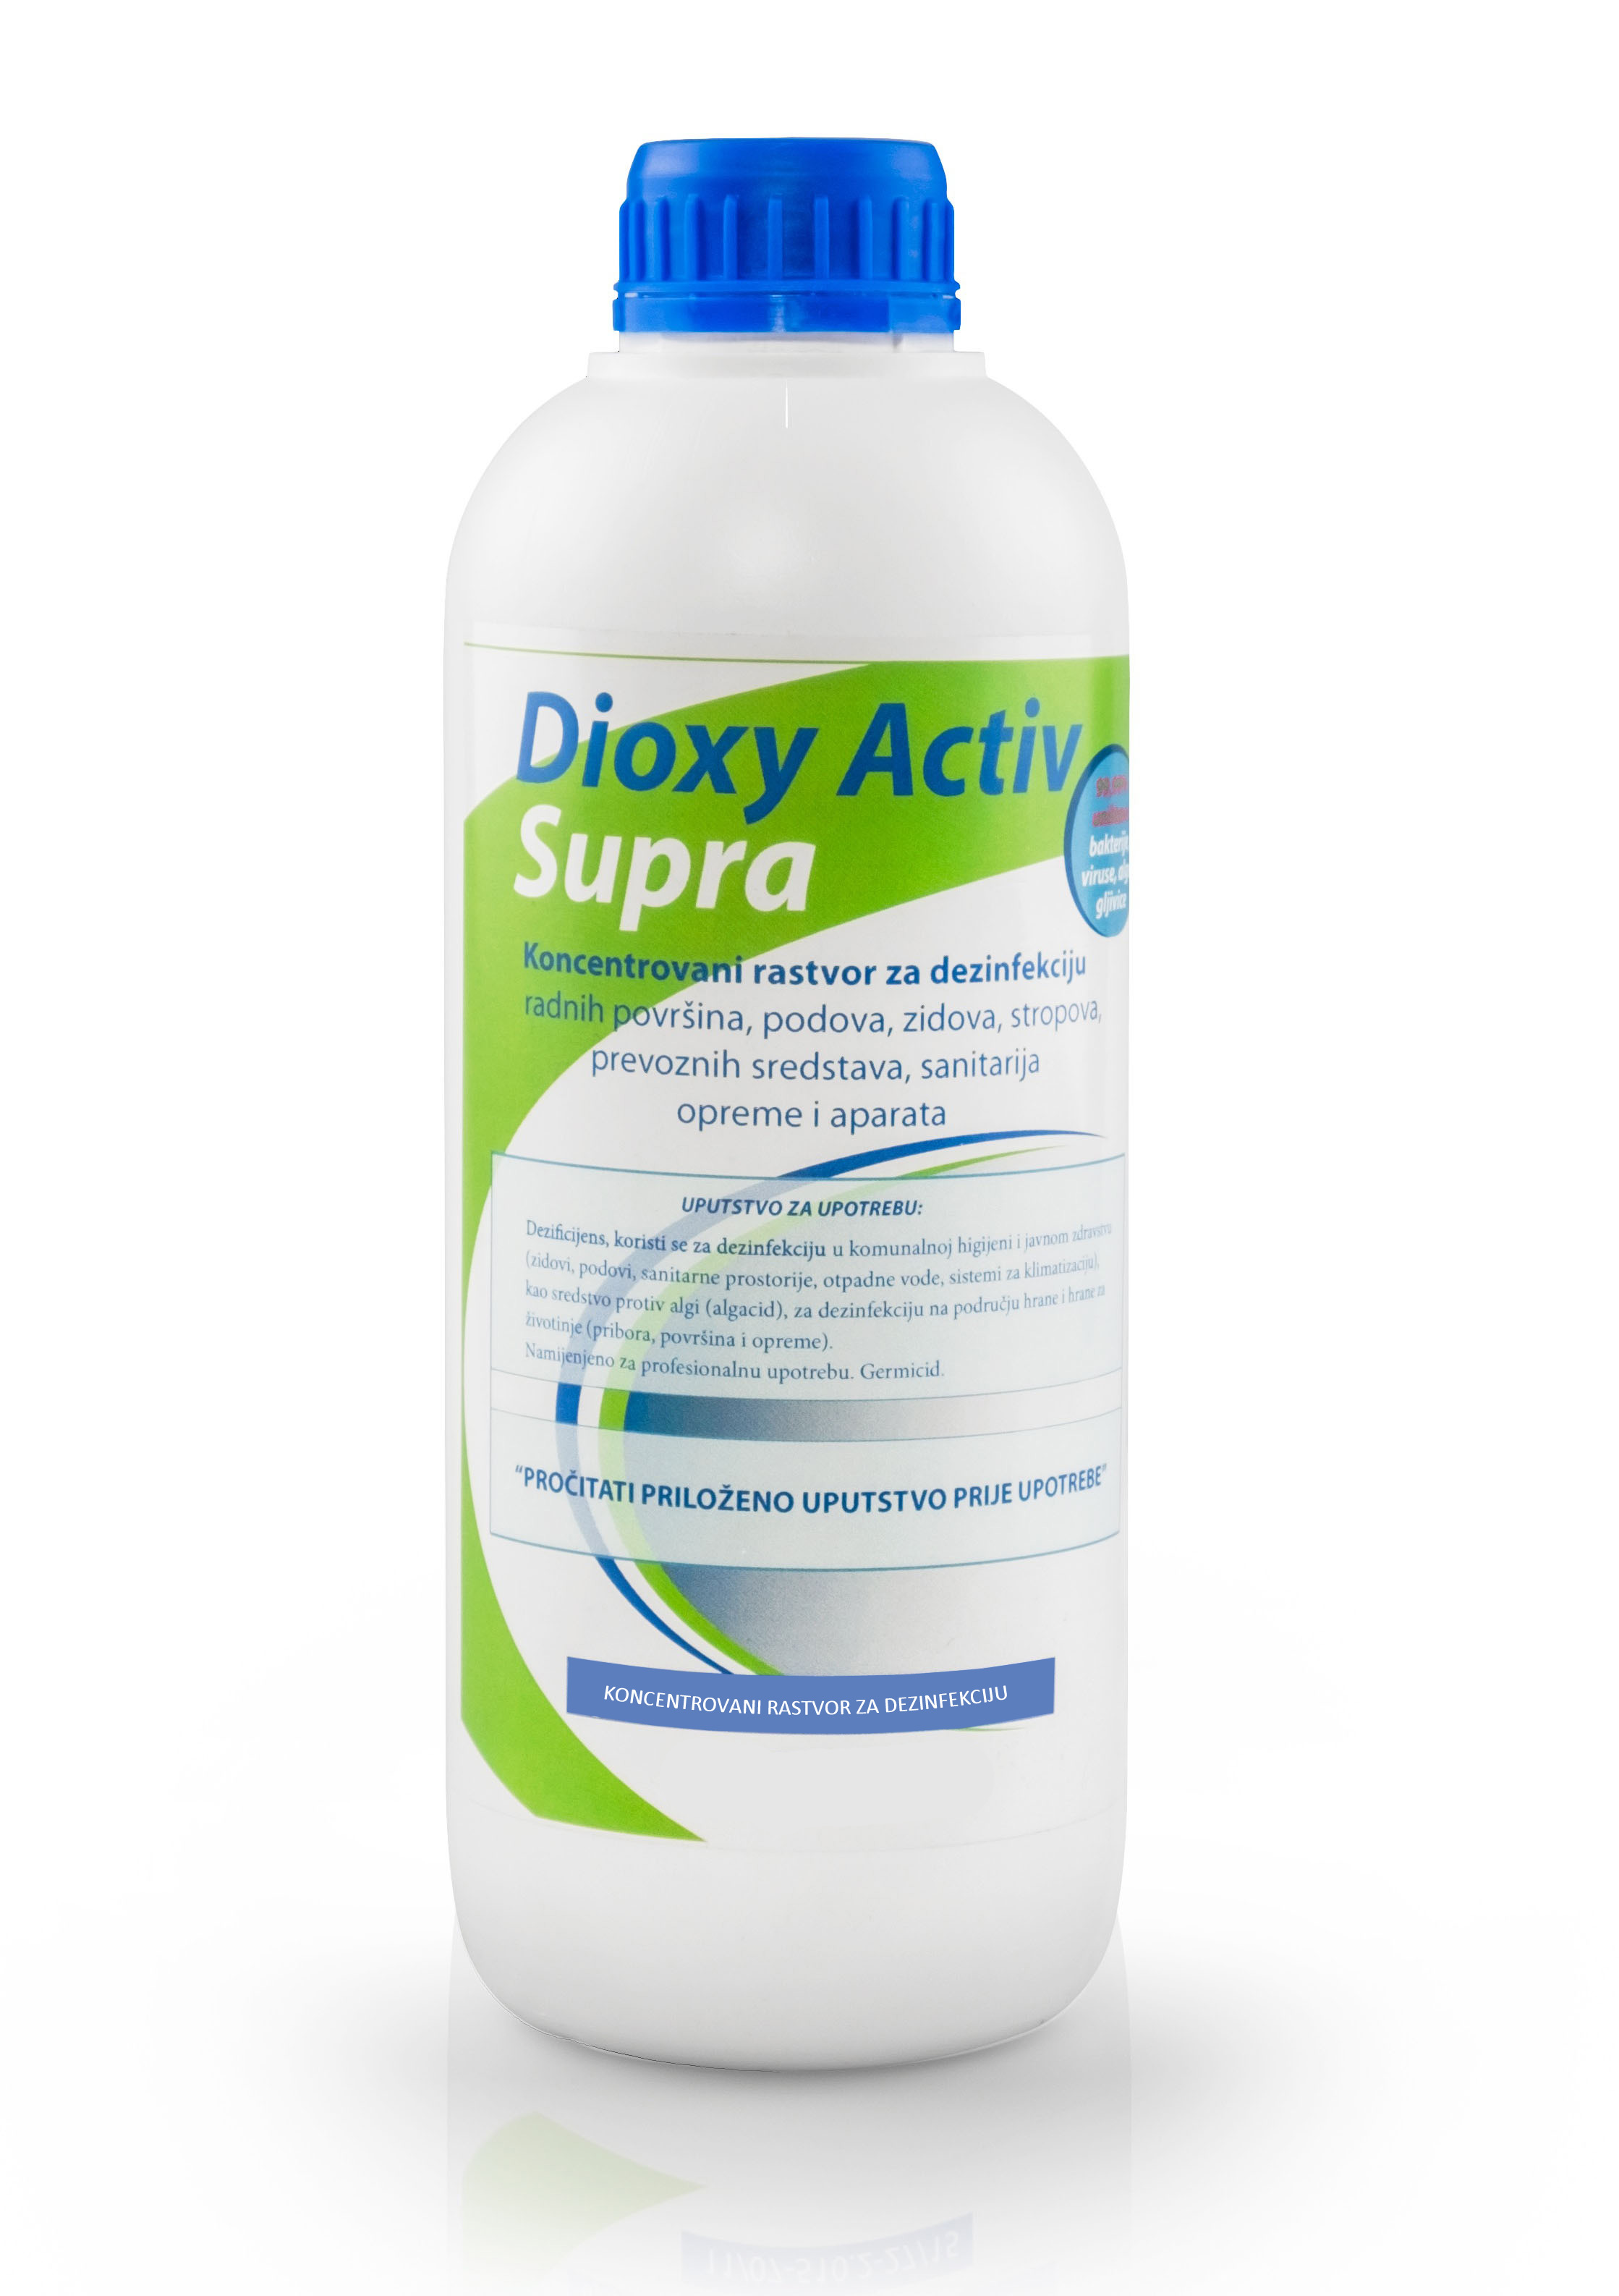 dioxy-activ-supra-home-sa-sjenkom-done